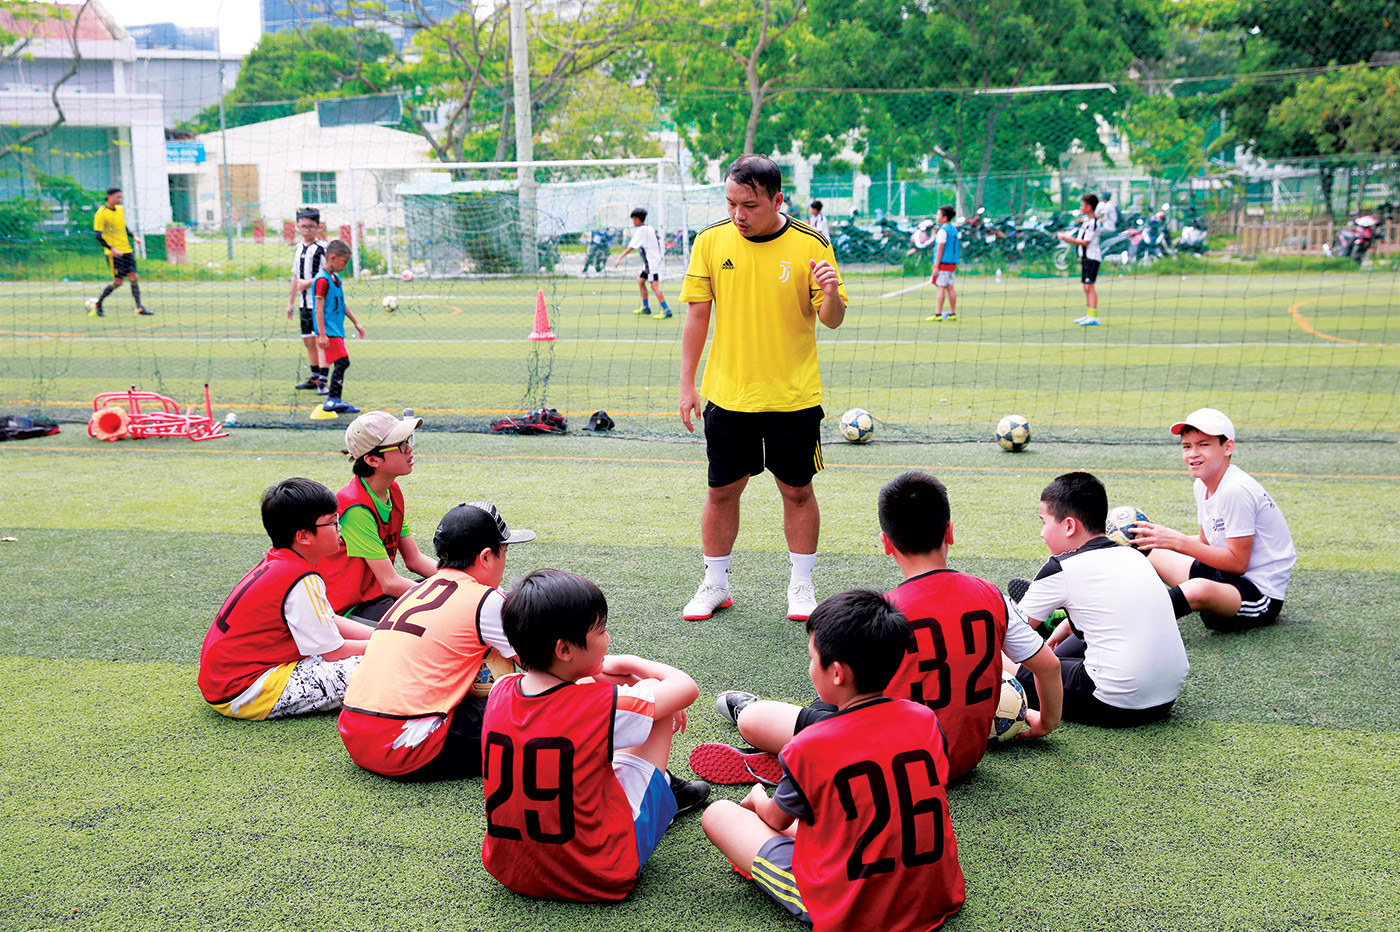 Phú Mỹ Hưng | Các lớp thể thao cho trẻ tại Phú Mỹ Hưng - Phú Mỹ Hưng